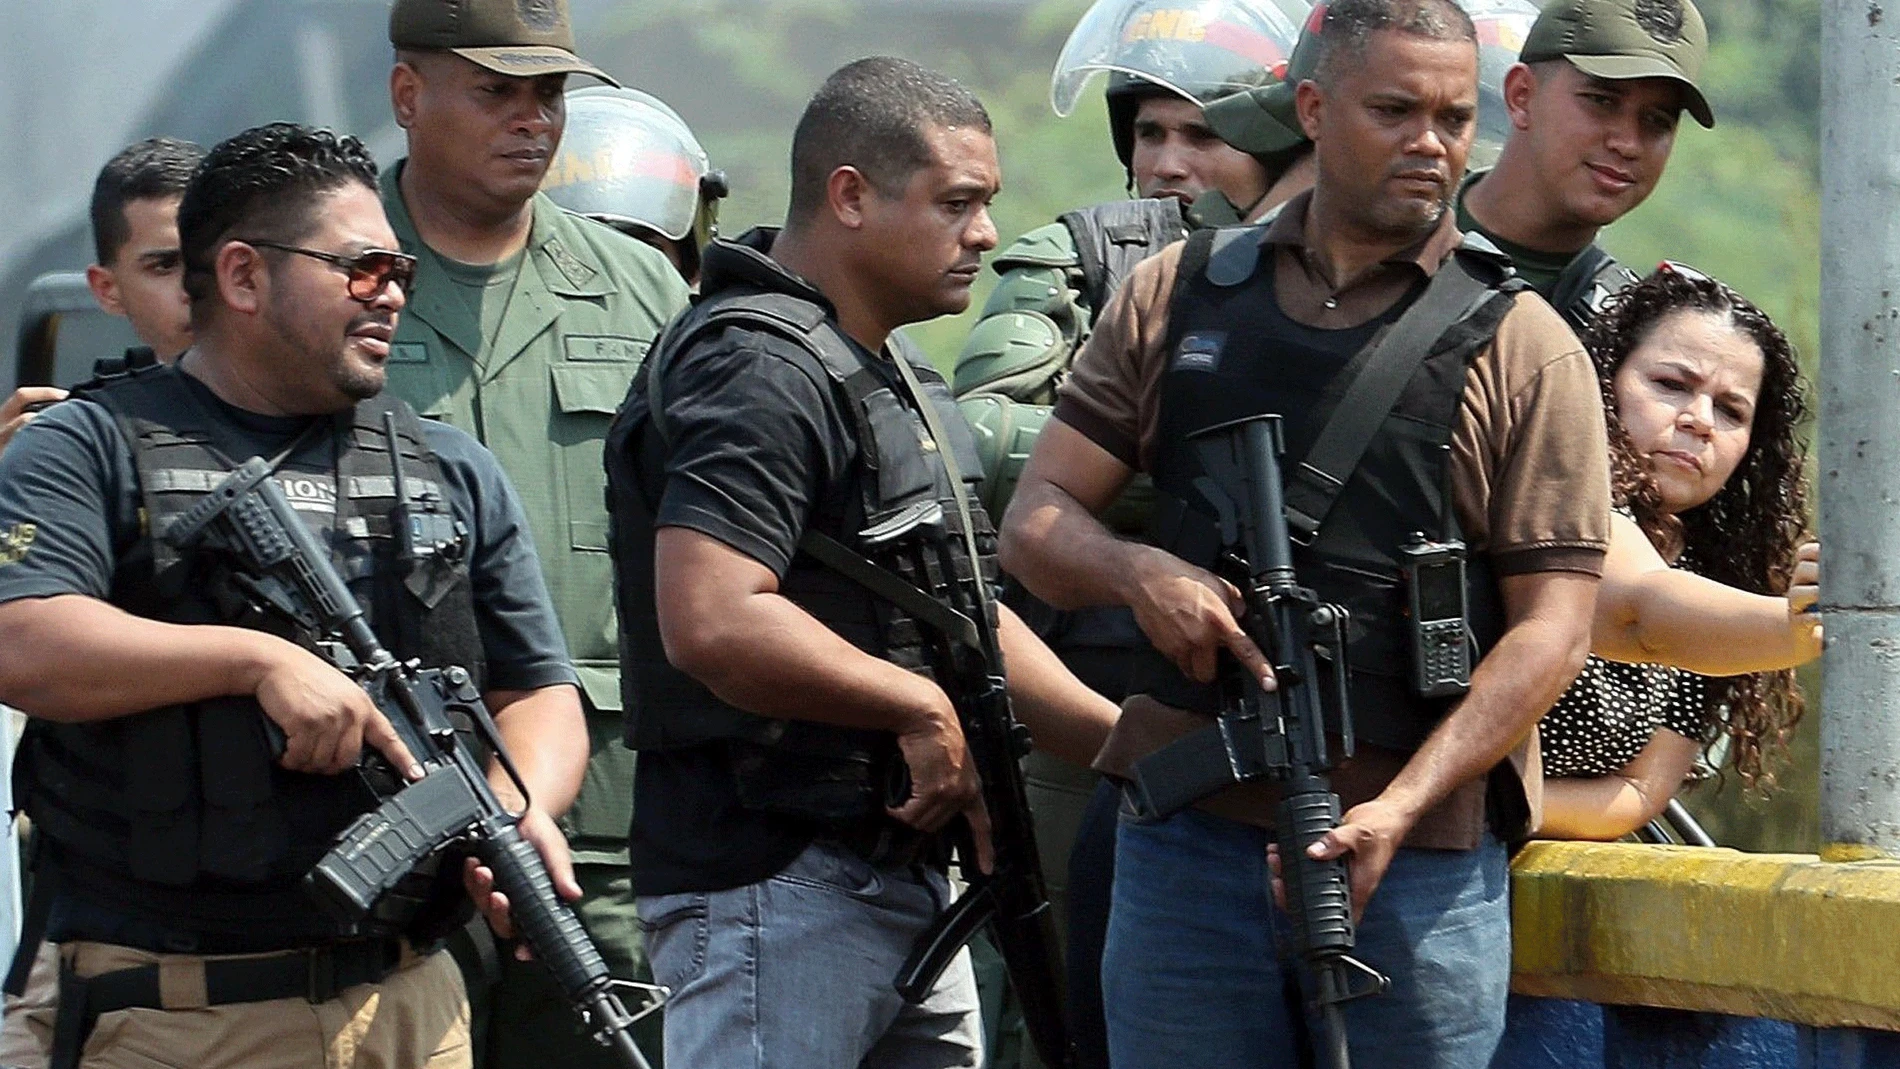 Iris Varela, rodeada de colectivos armados y agentes de la GNB